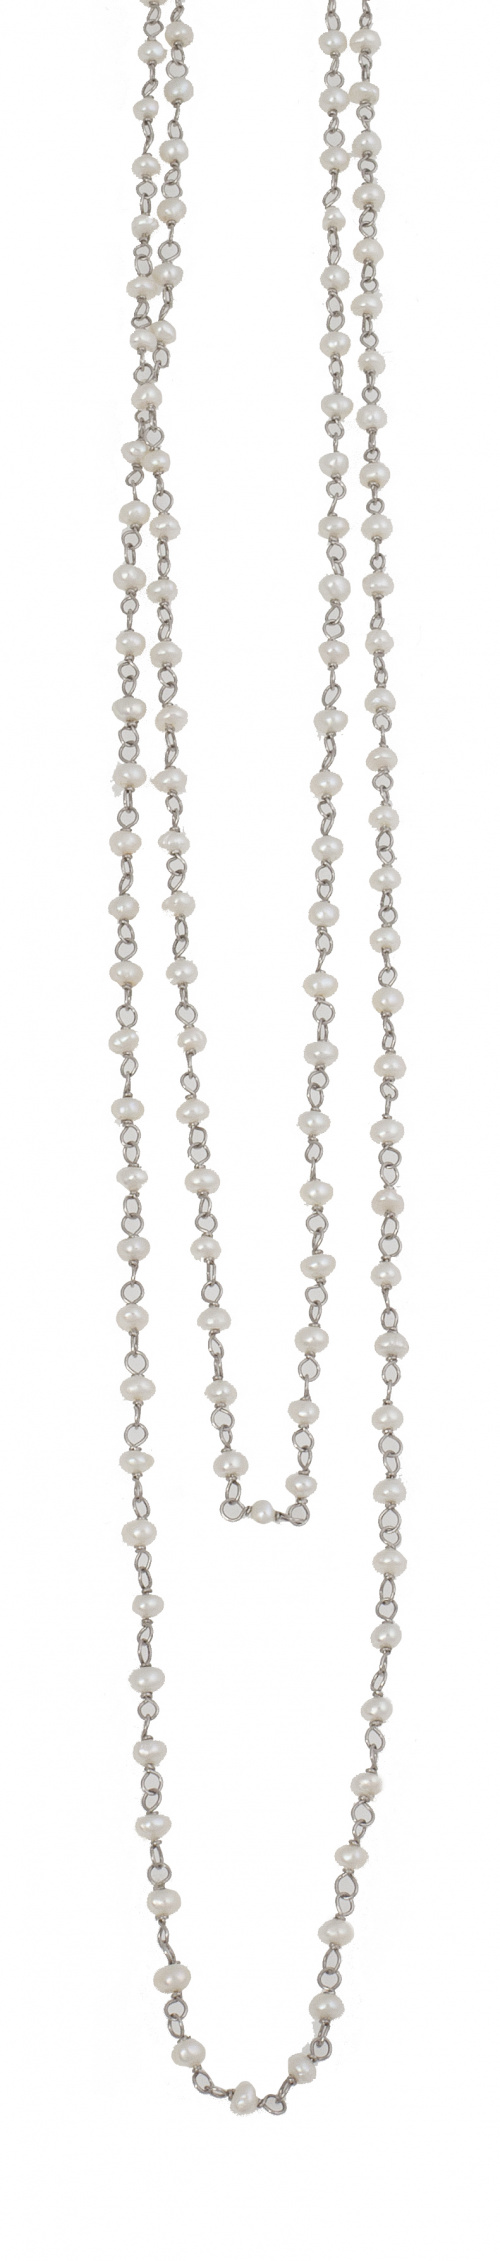 Cadena larga estilo Art-Decó con perlas alternas con eslabo